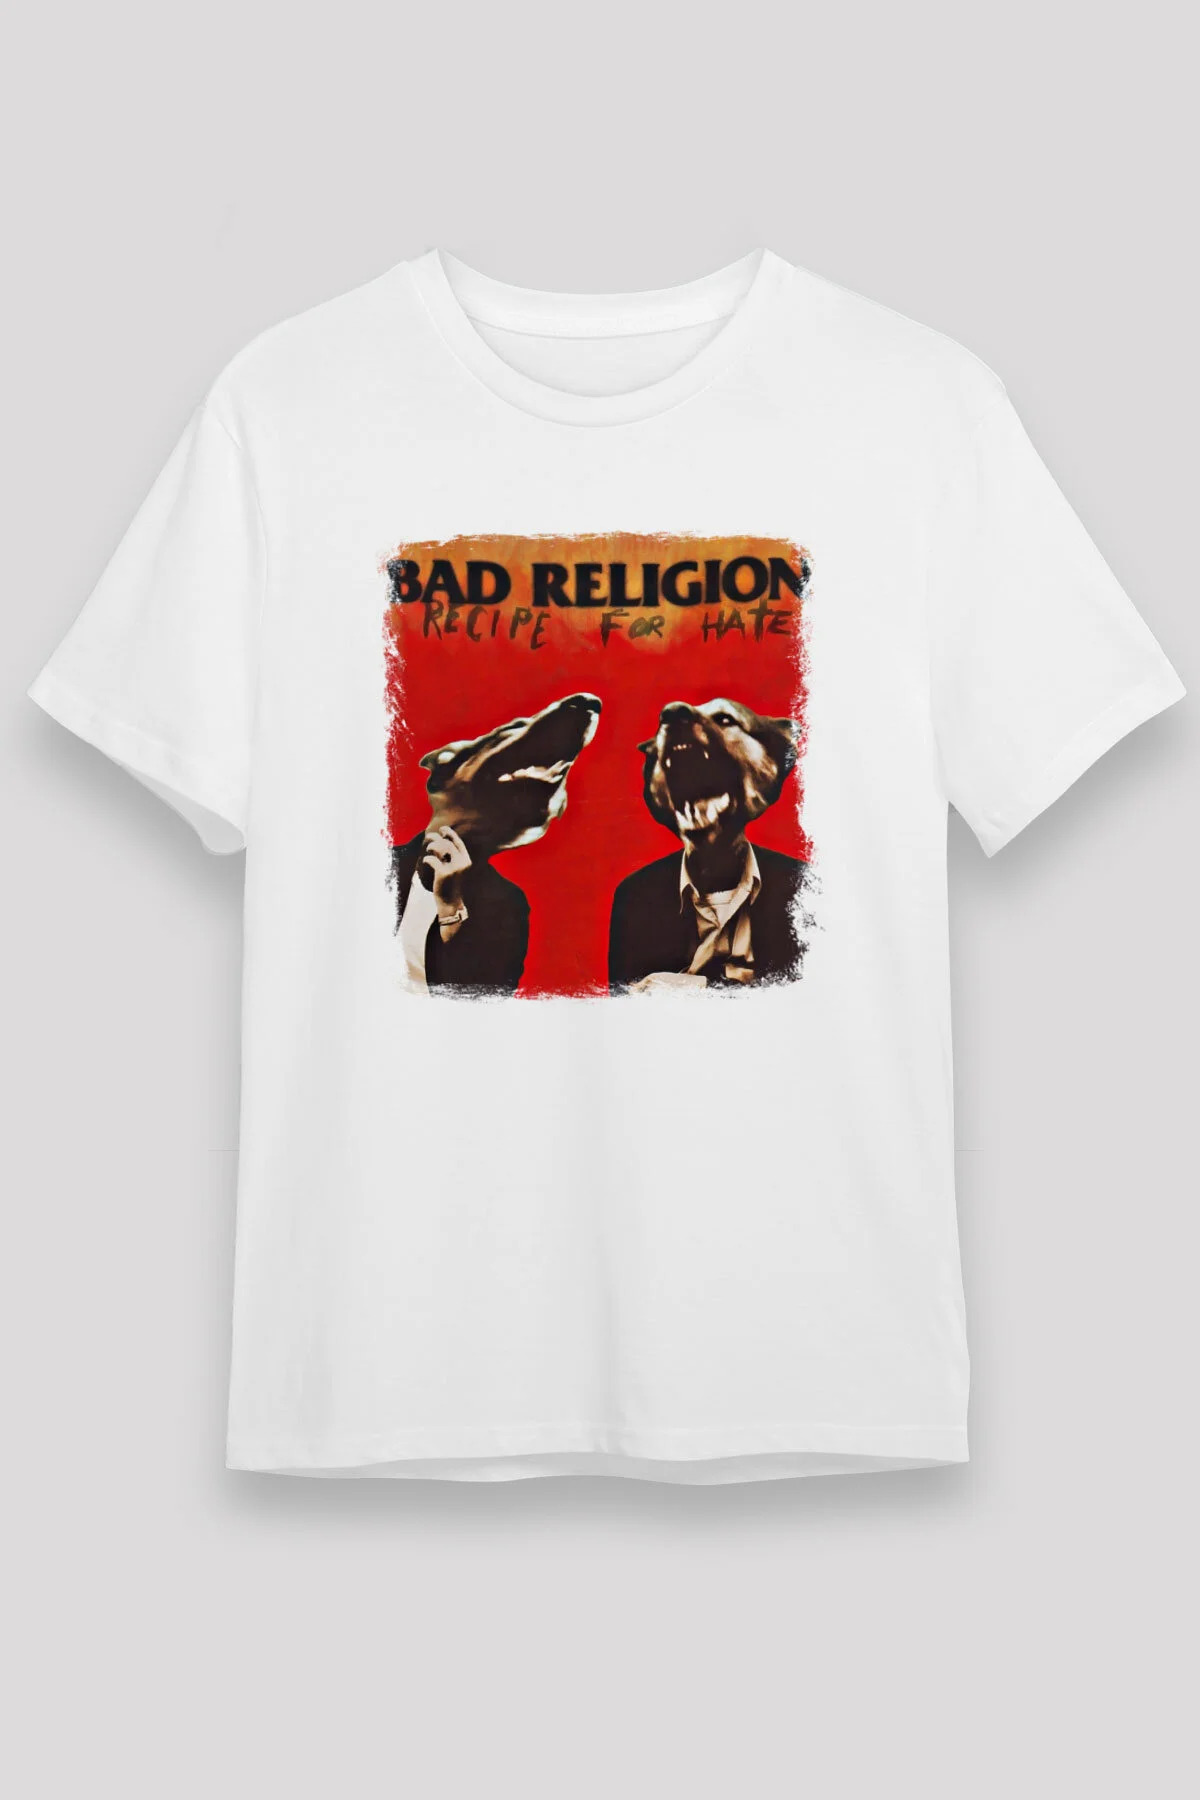 Bad Religion ,Music Band ,Unisex Tshirt 18